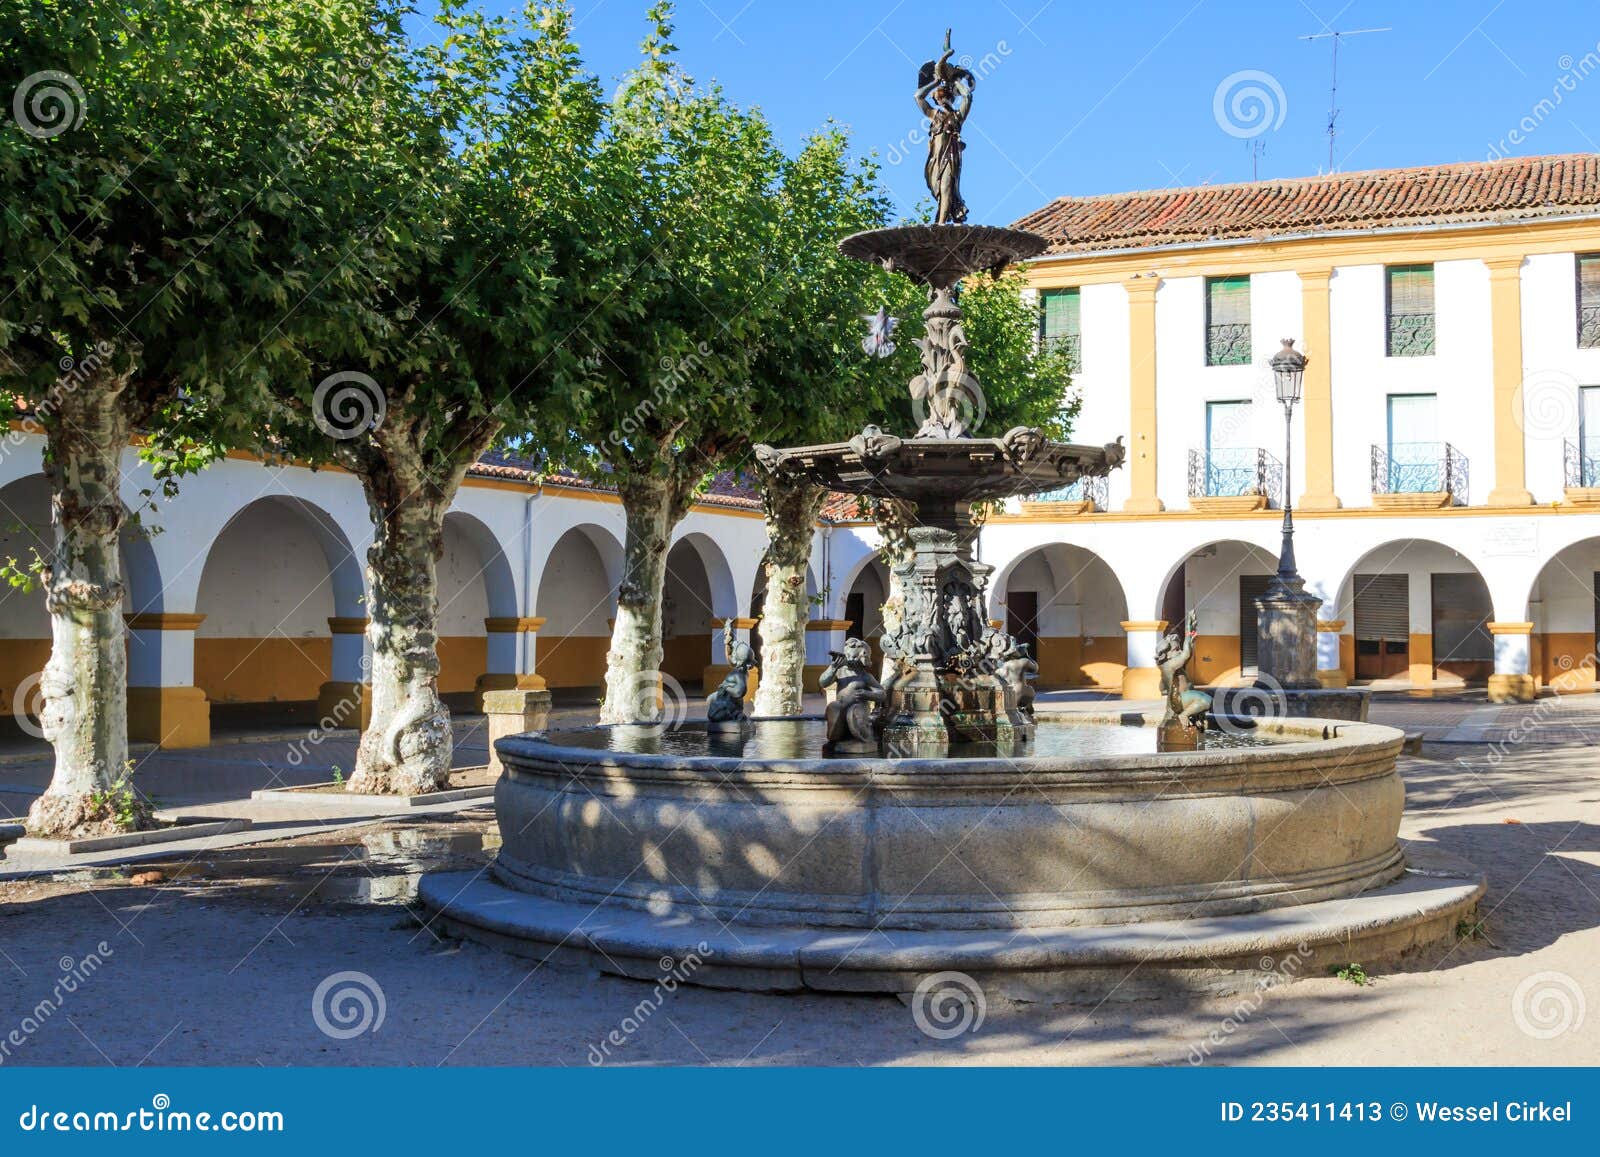 fountain in the center of plaza buen alcade, ciudad rodrigo, spain